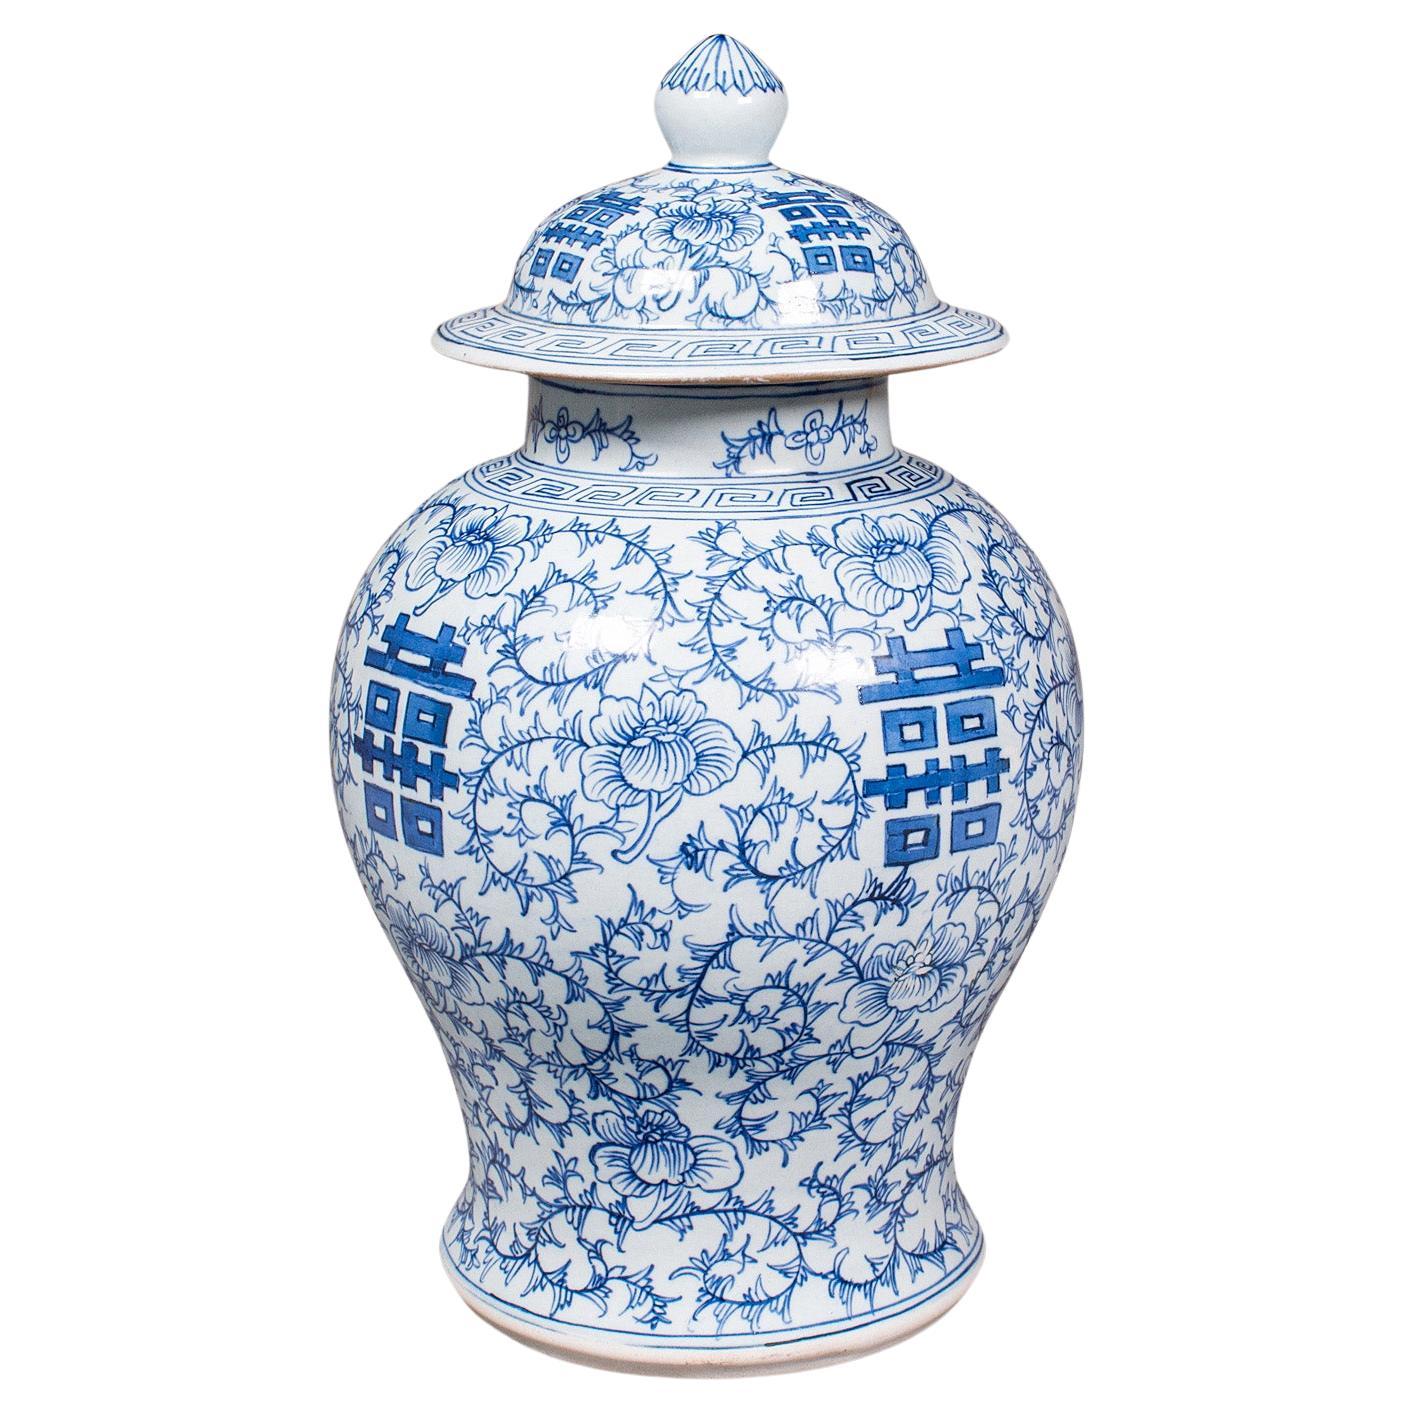 Vintage Decorative Flower Vase, Chinese, Ceramic, Urn, Spice Jar, Art Deco, 1930 For Sale